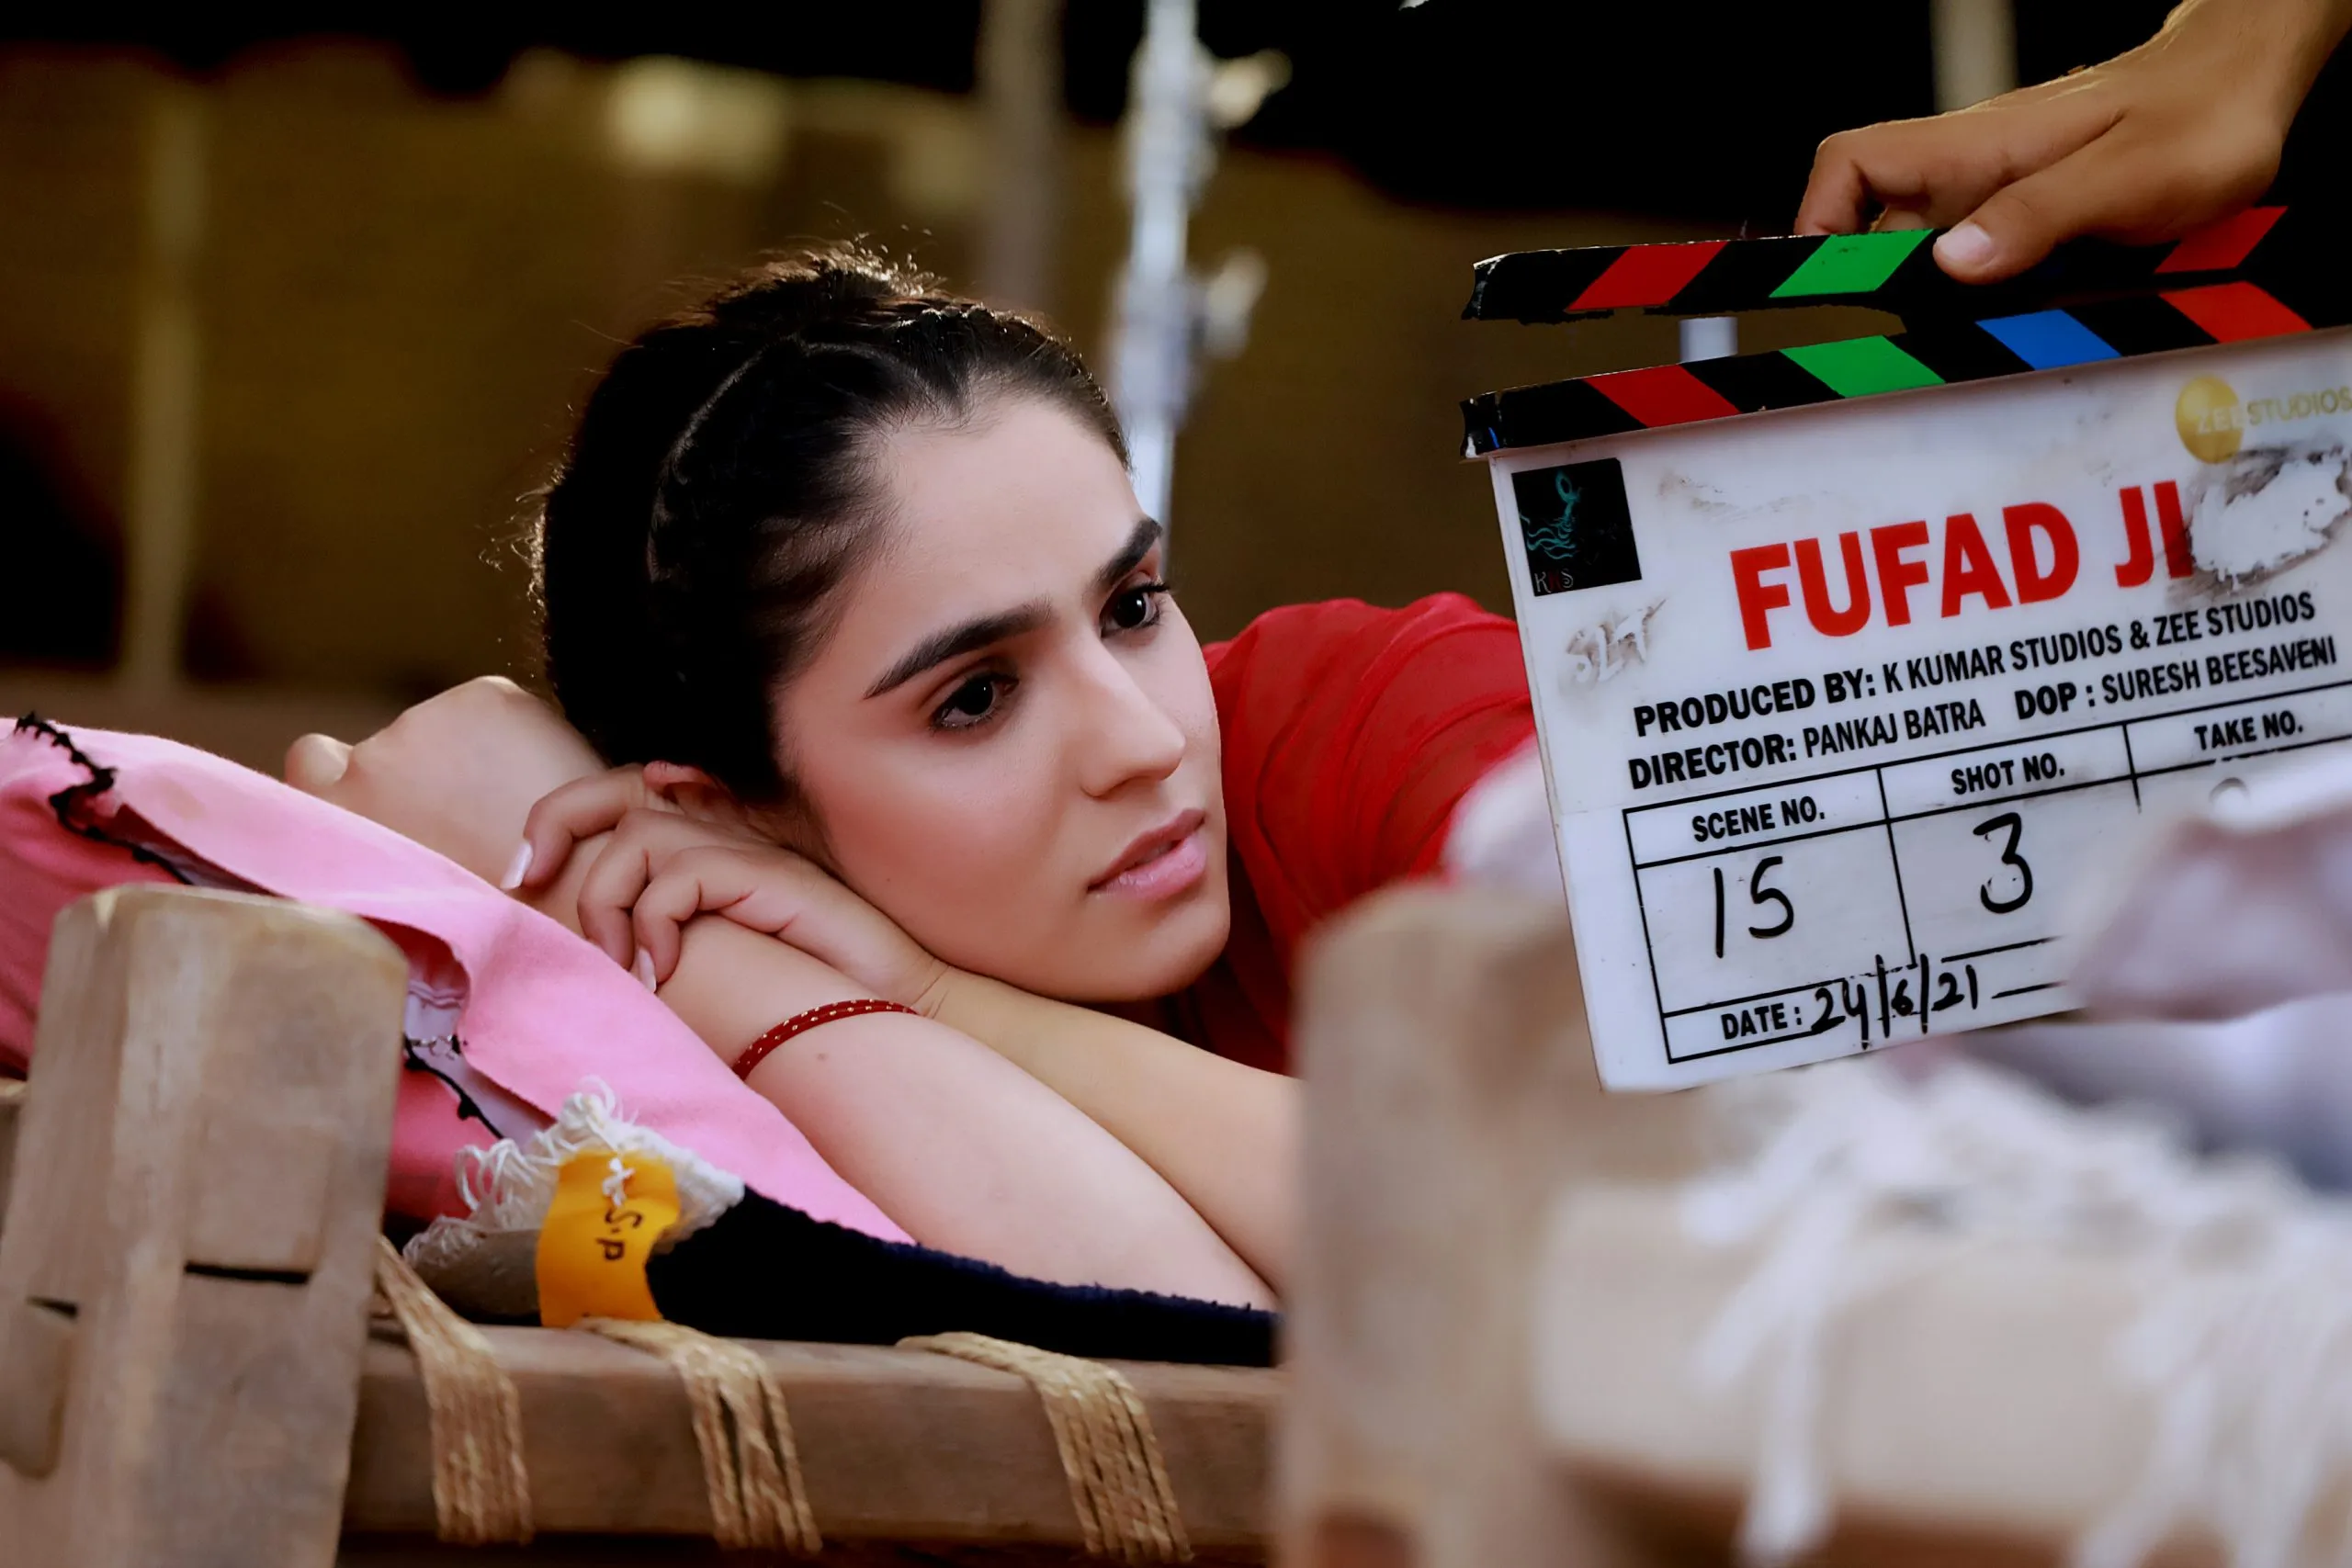 पंजाबी फिल्म "फुफ्फद जी" के सेट से अभिनेत्री सिद्धिका शर्मा का फर्स्ट लुक हुआ आउट